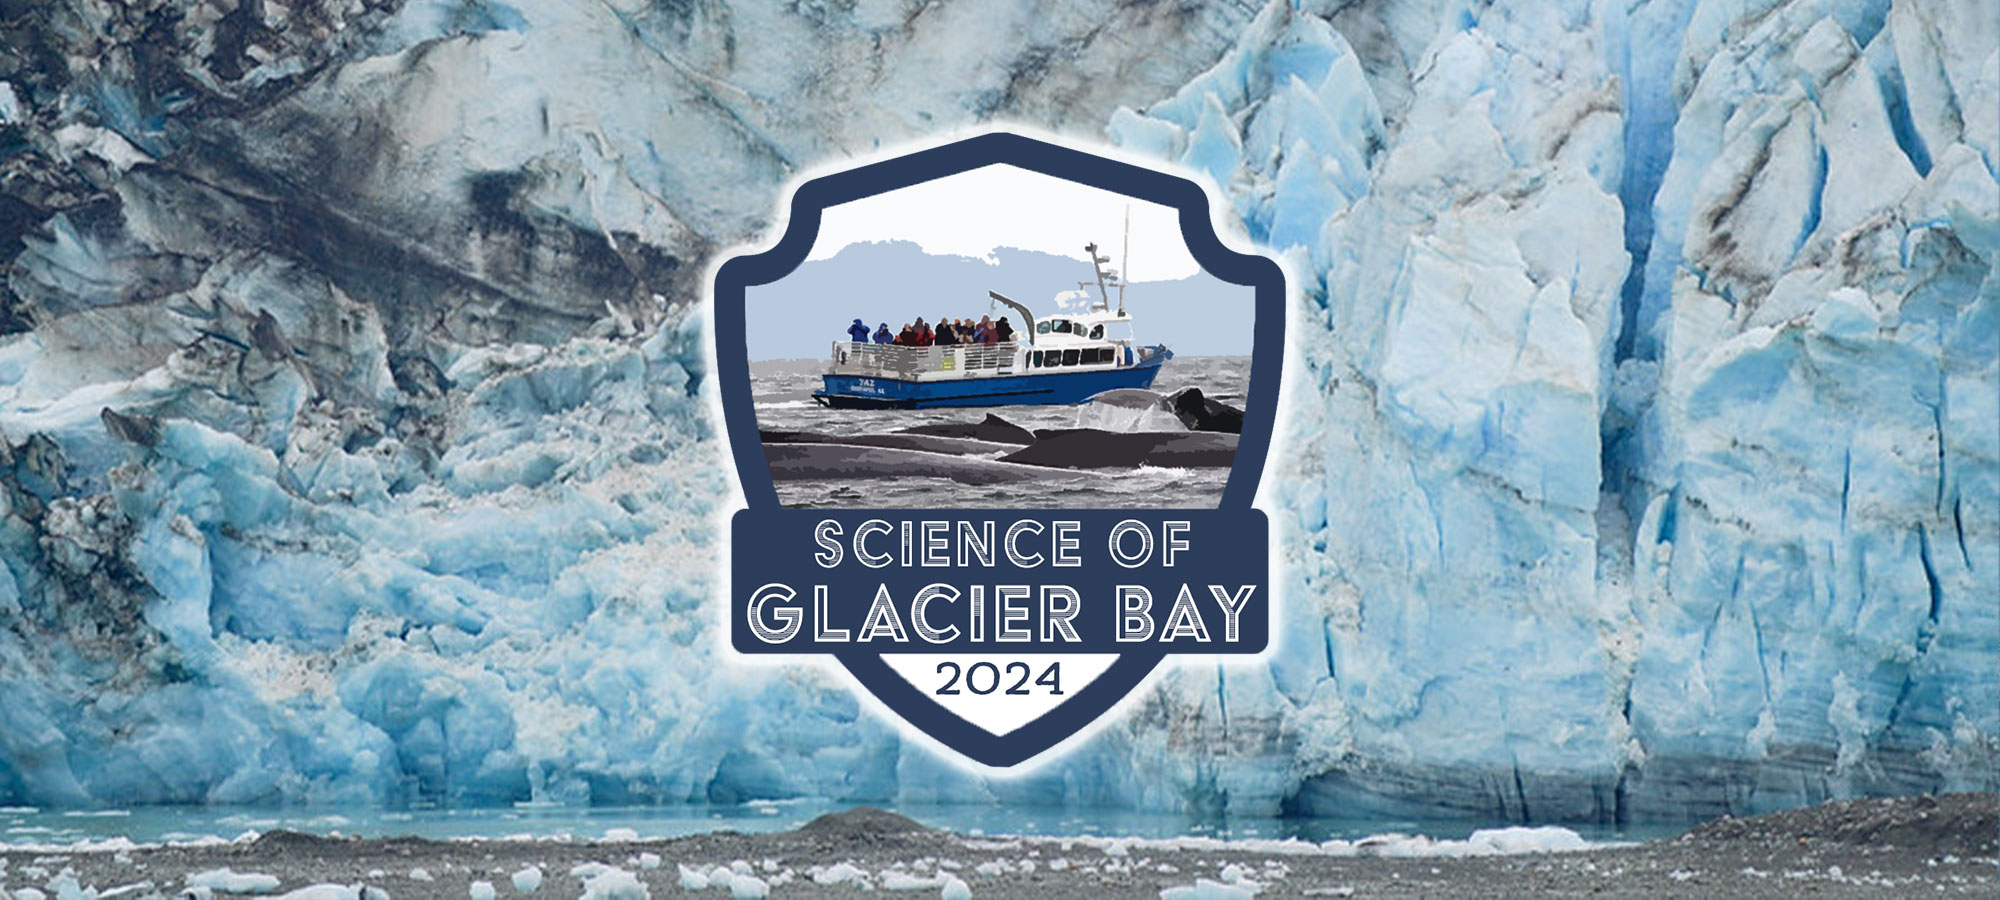 Science of Glacier Bay 2024